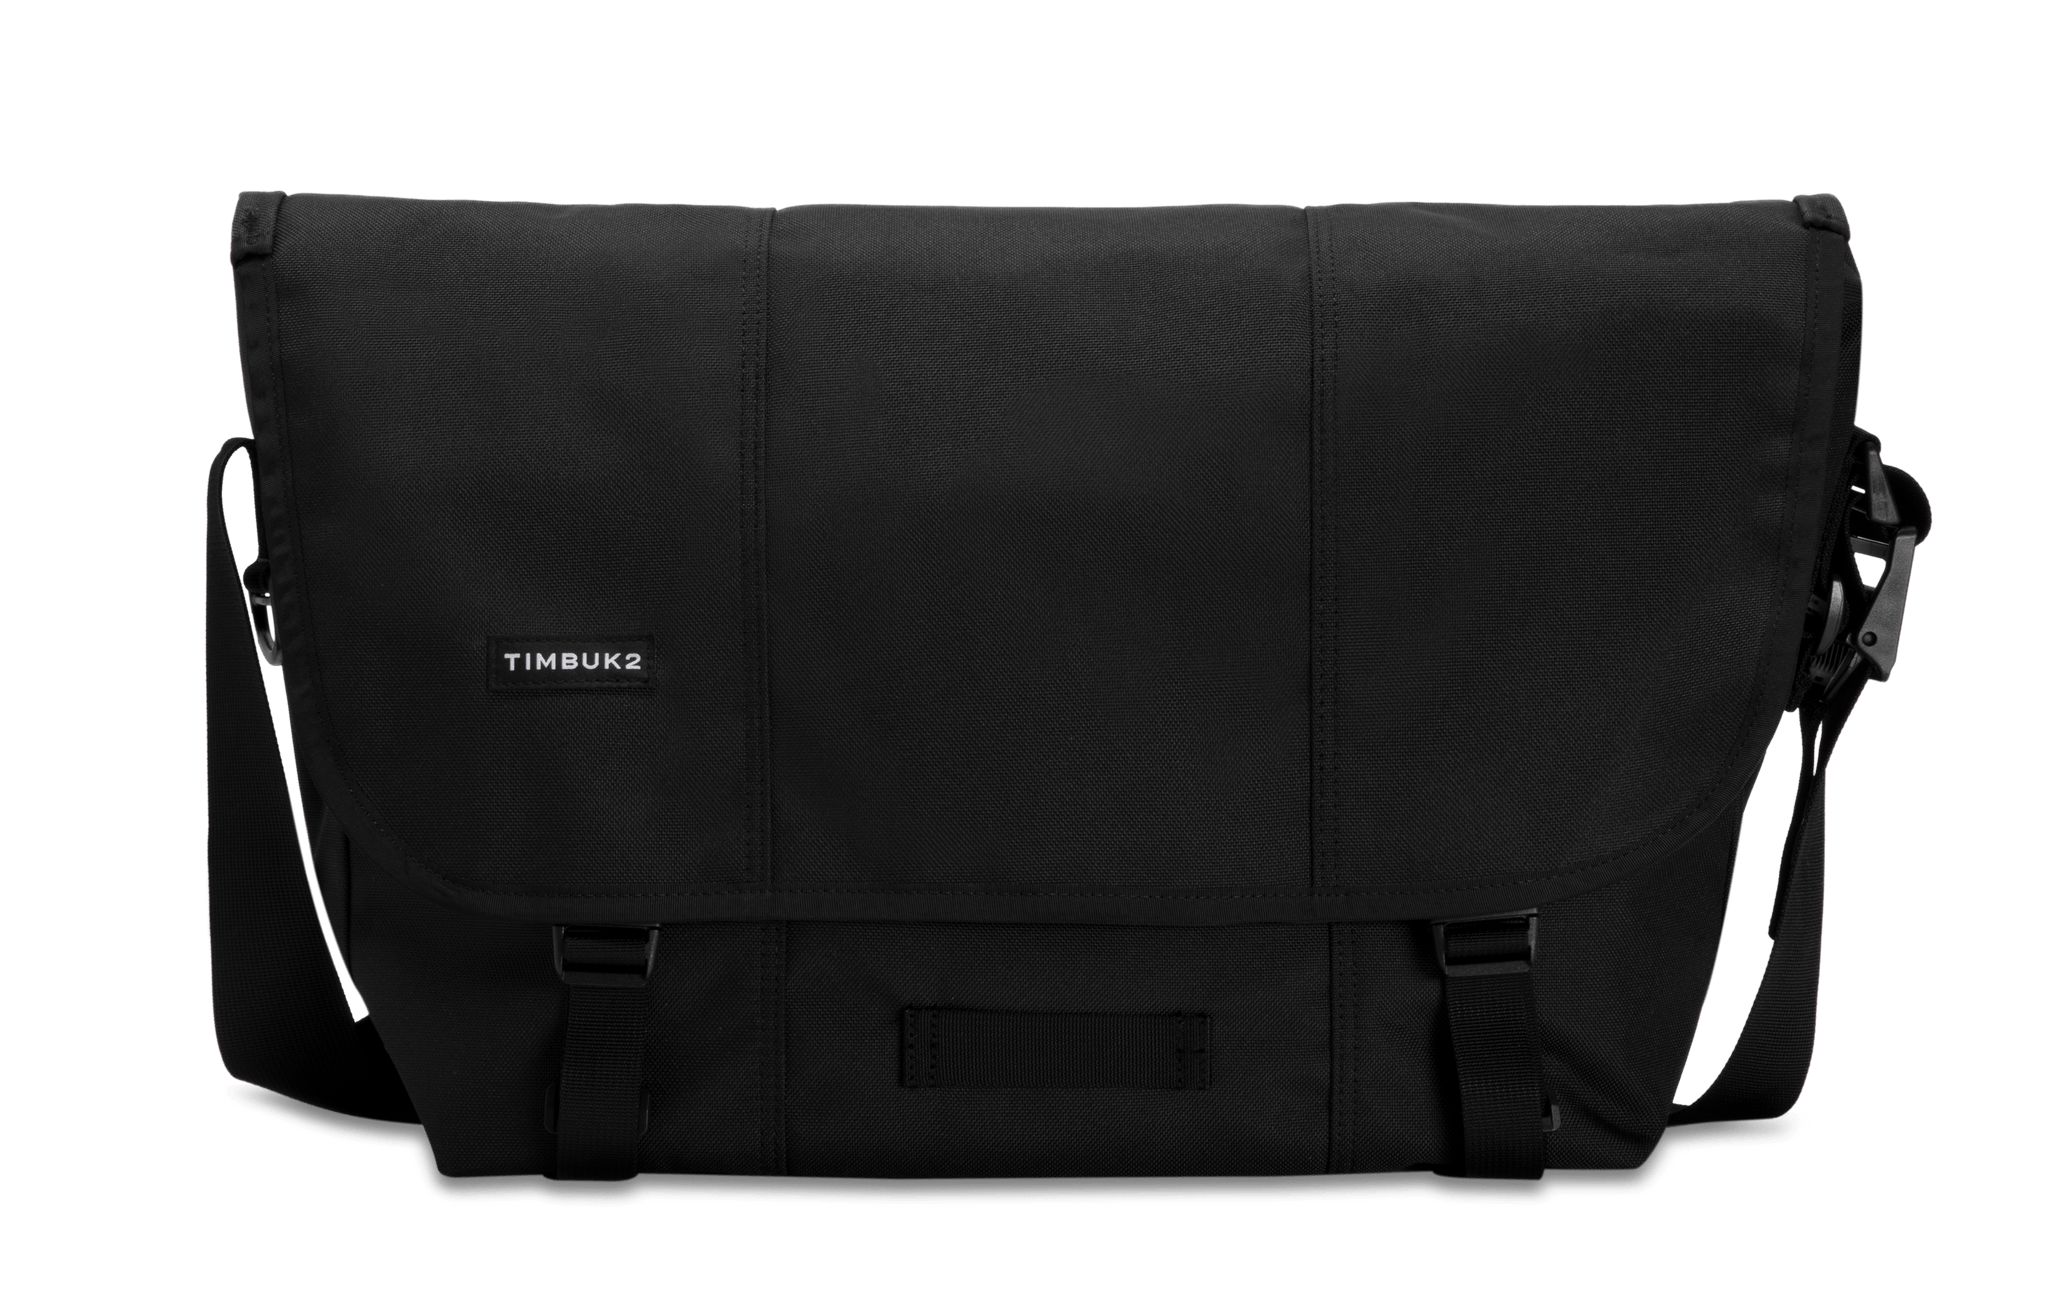 Timbuk2 Classic Messenger Bag Size Large, Black